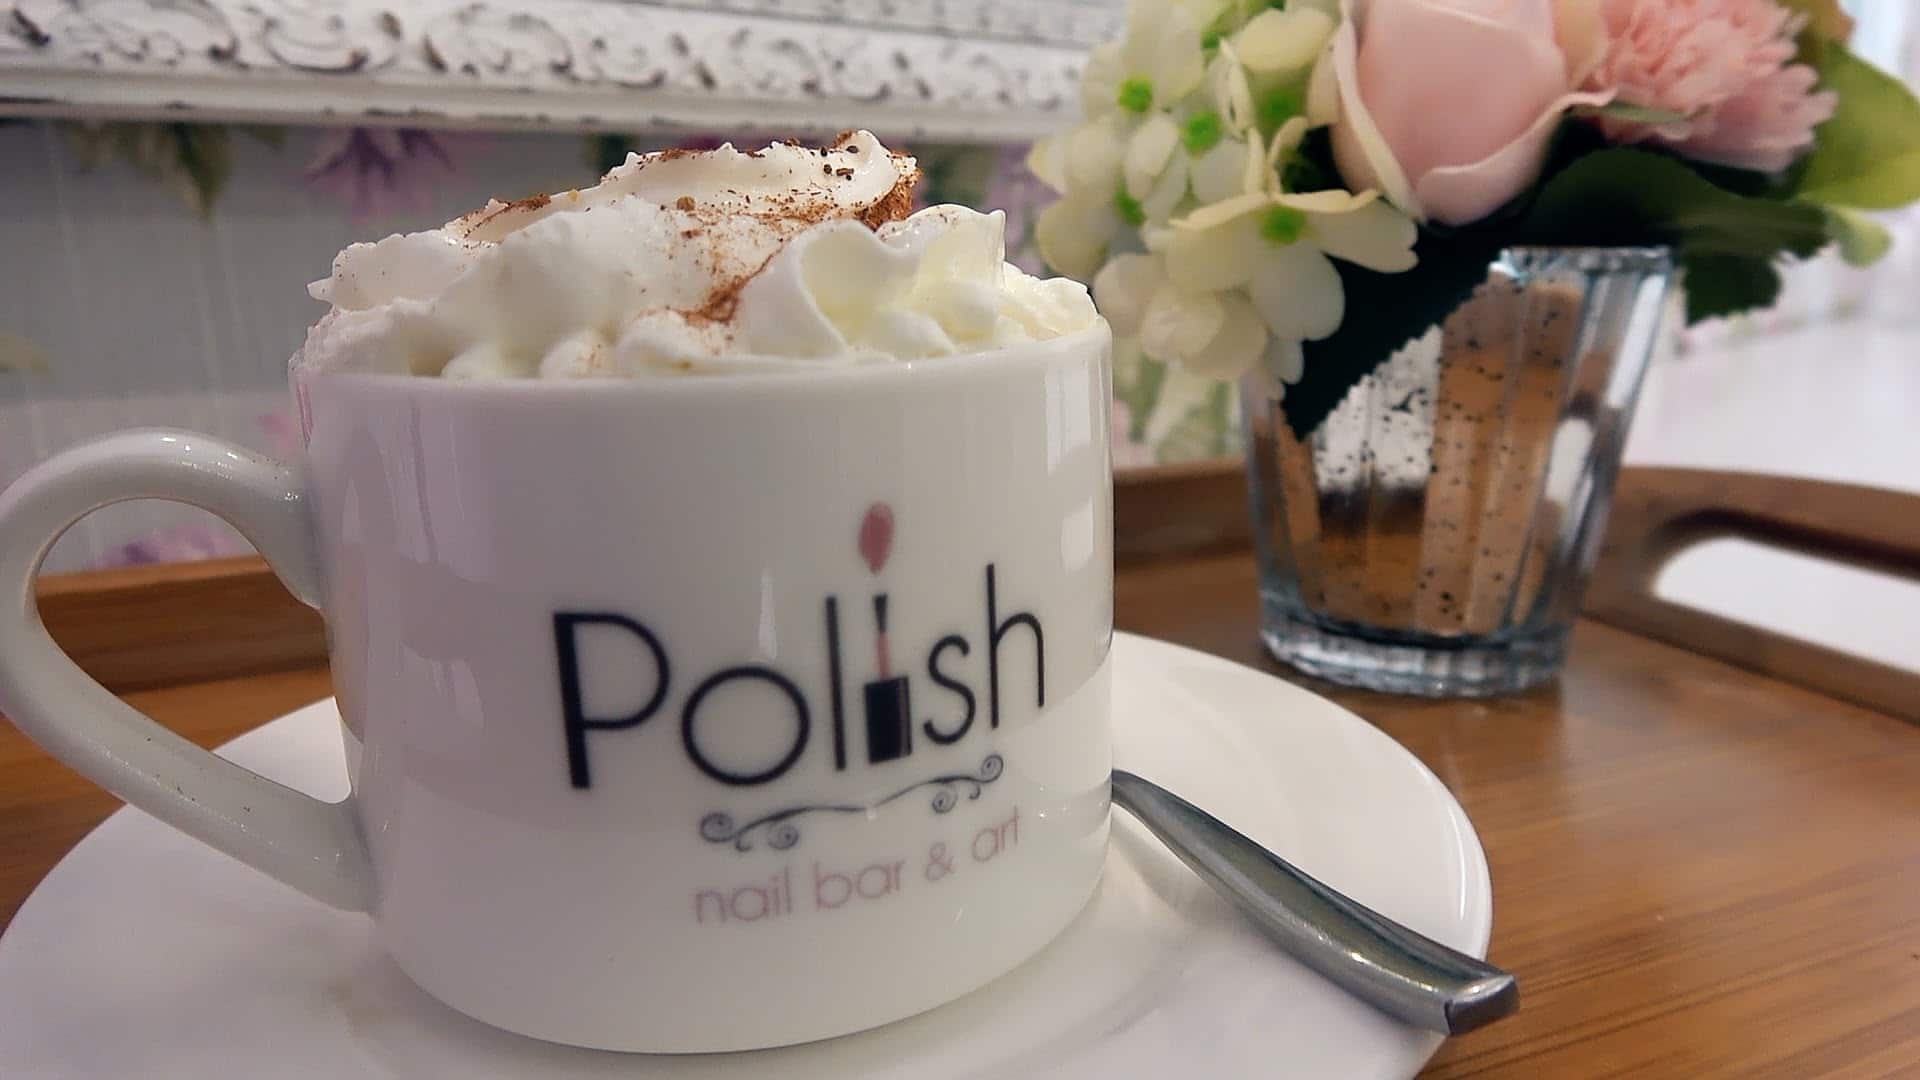 Polish beauty & Nail bar